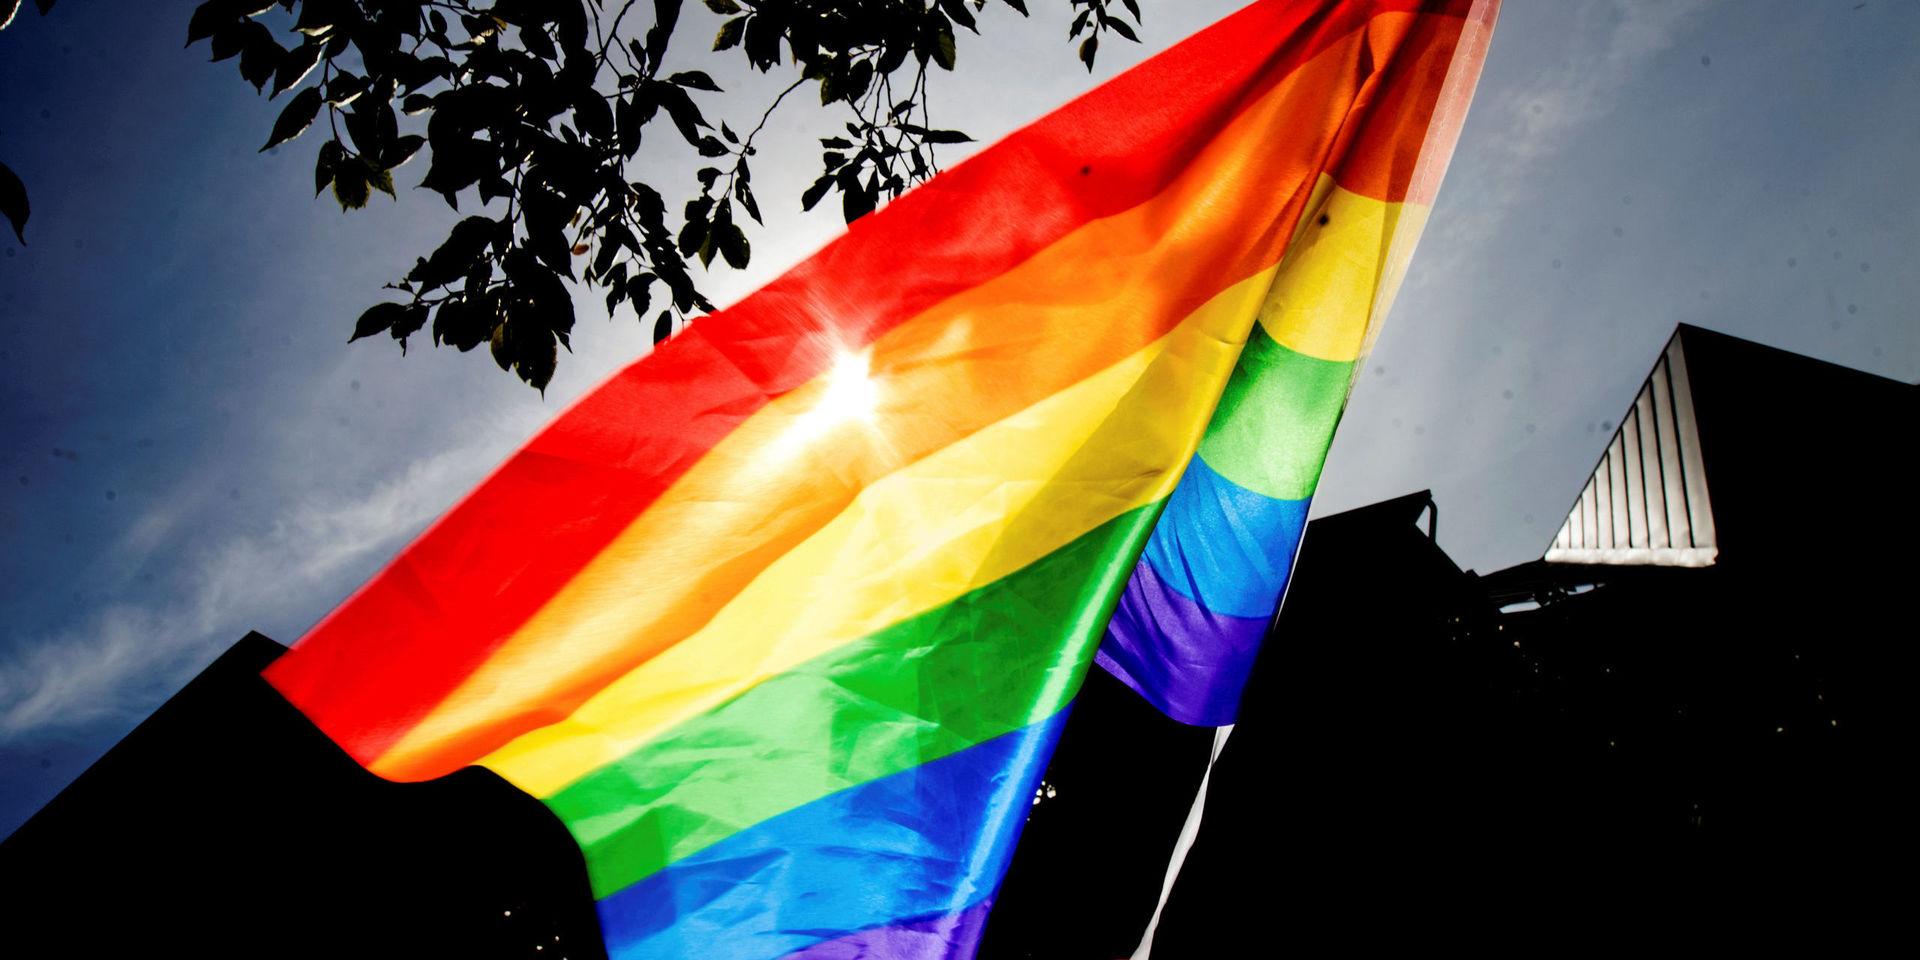 Svenska Dagbladets avslöjande visade en mörk sida av Pride.